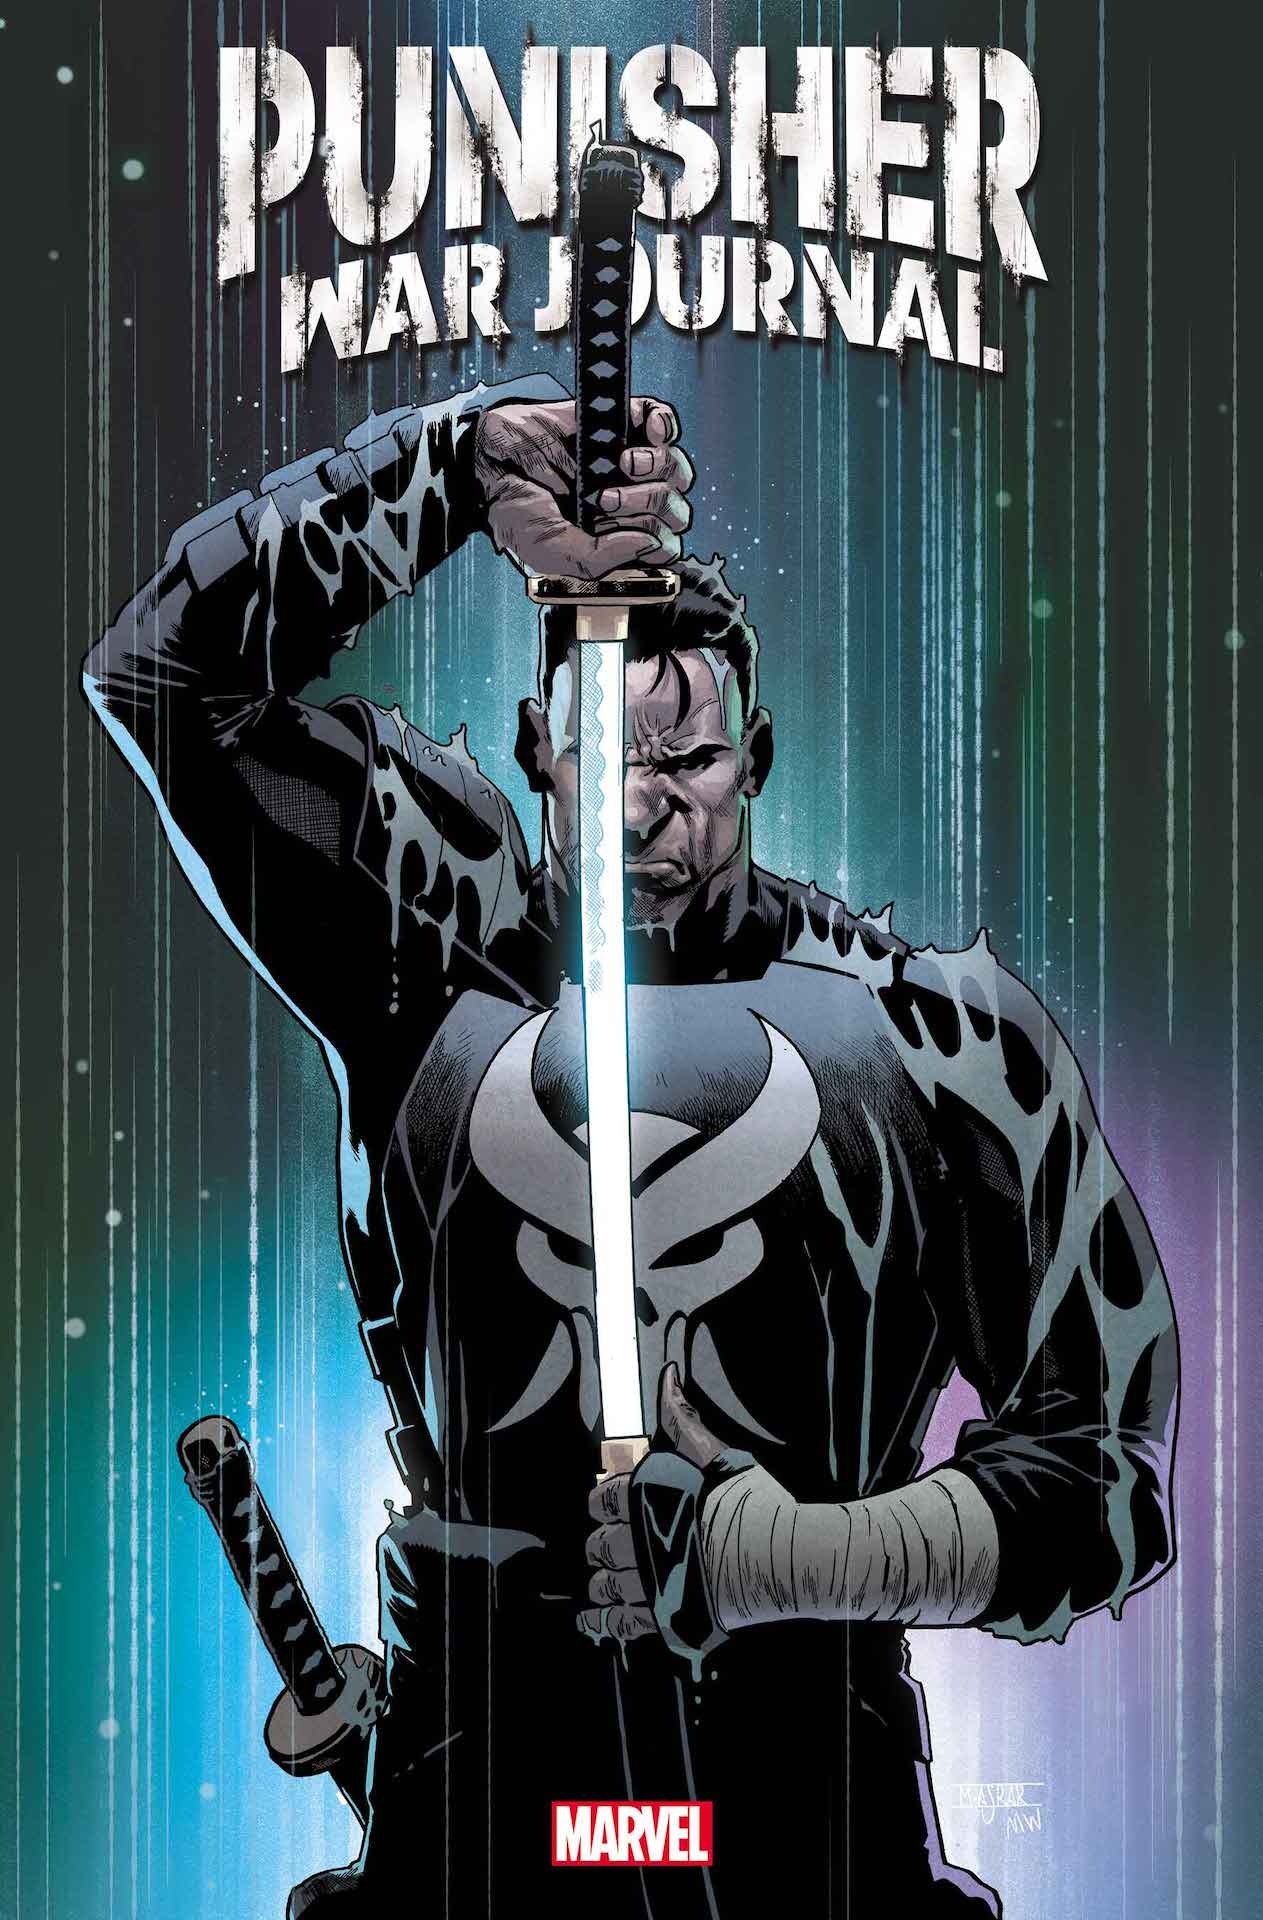 Cover di Punisher War Journal: Blitz 1 di Mahmud Asrar, il primo dei tre speciali fuori serie